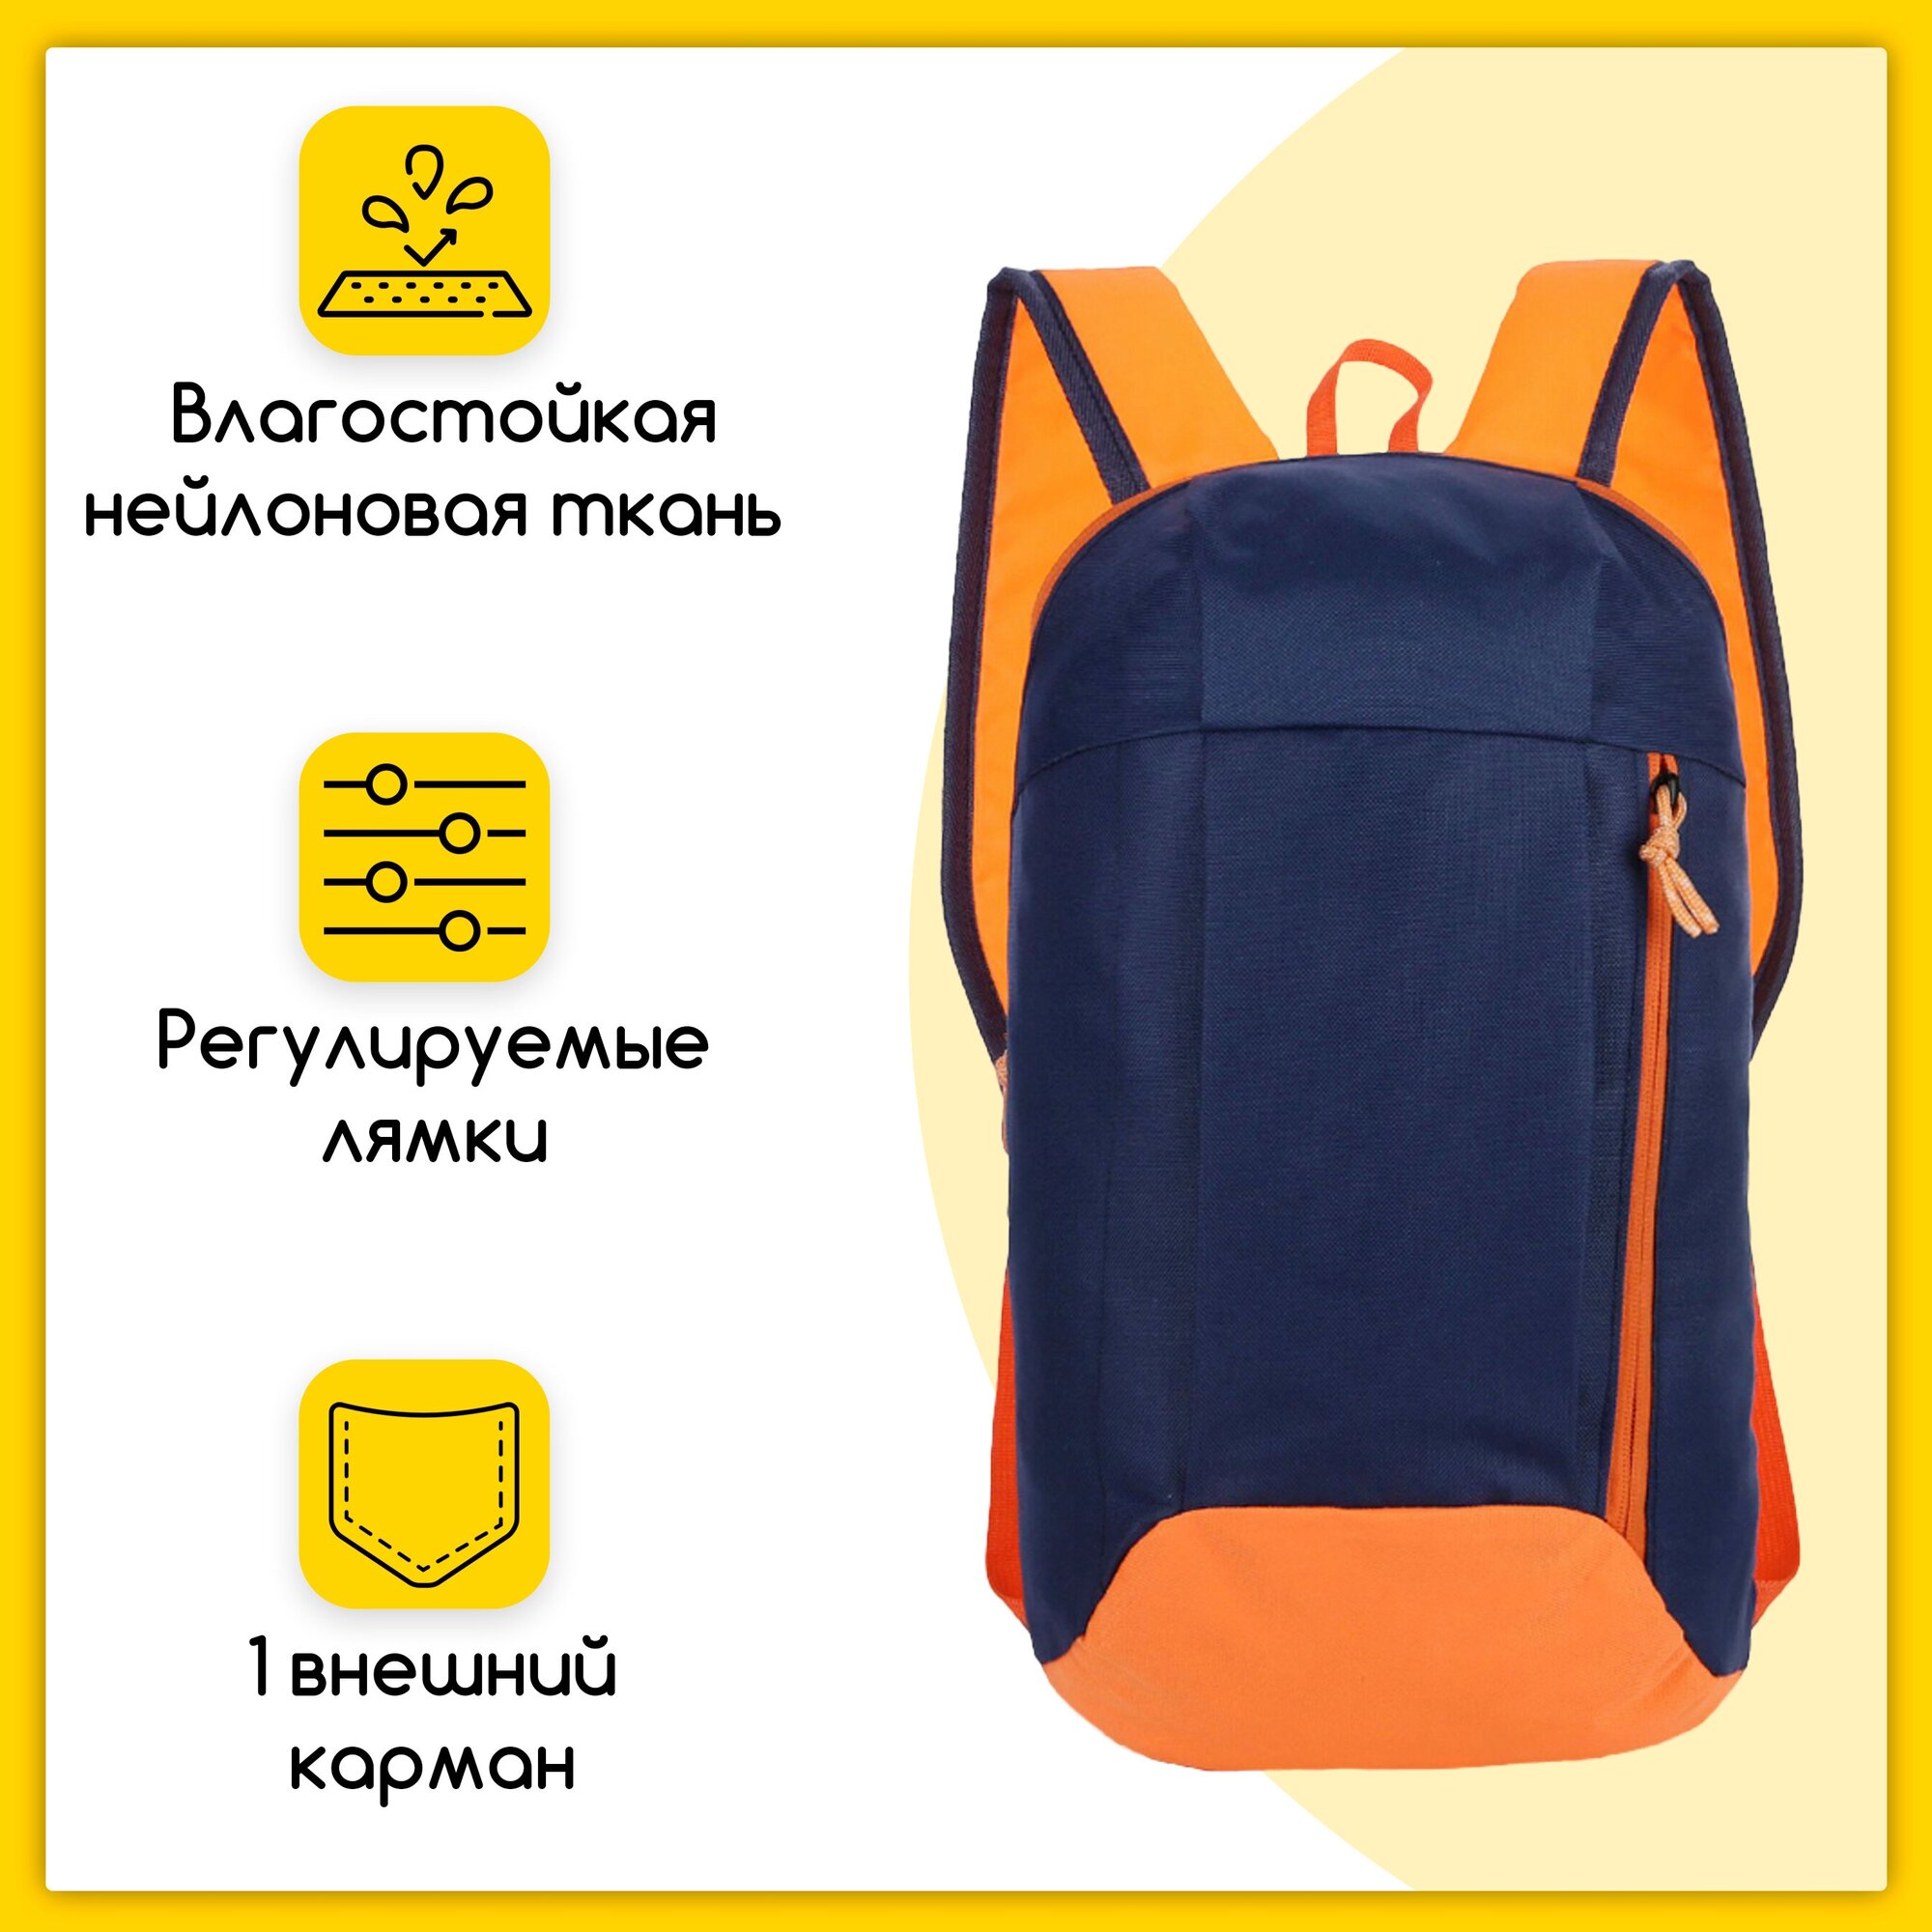 Износостойкий, водонепроницаемый спортивный рюкзак, унисекc, нейлоновая ткань, 40х21х13 см, сине-оранжевый